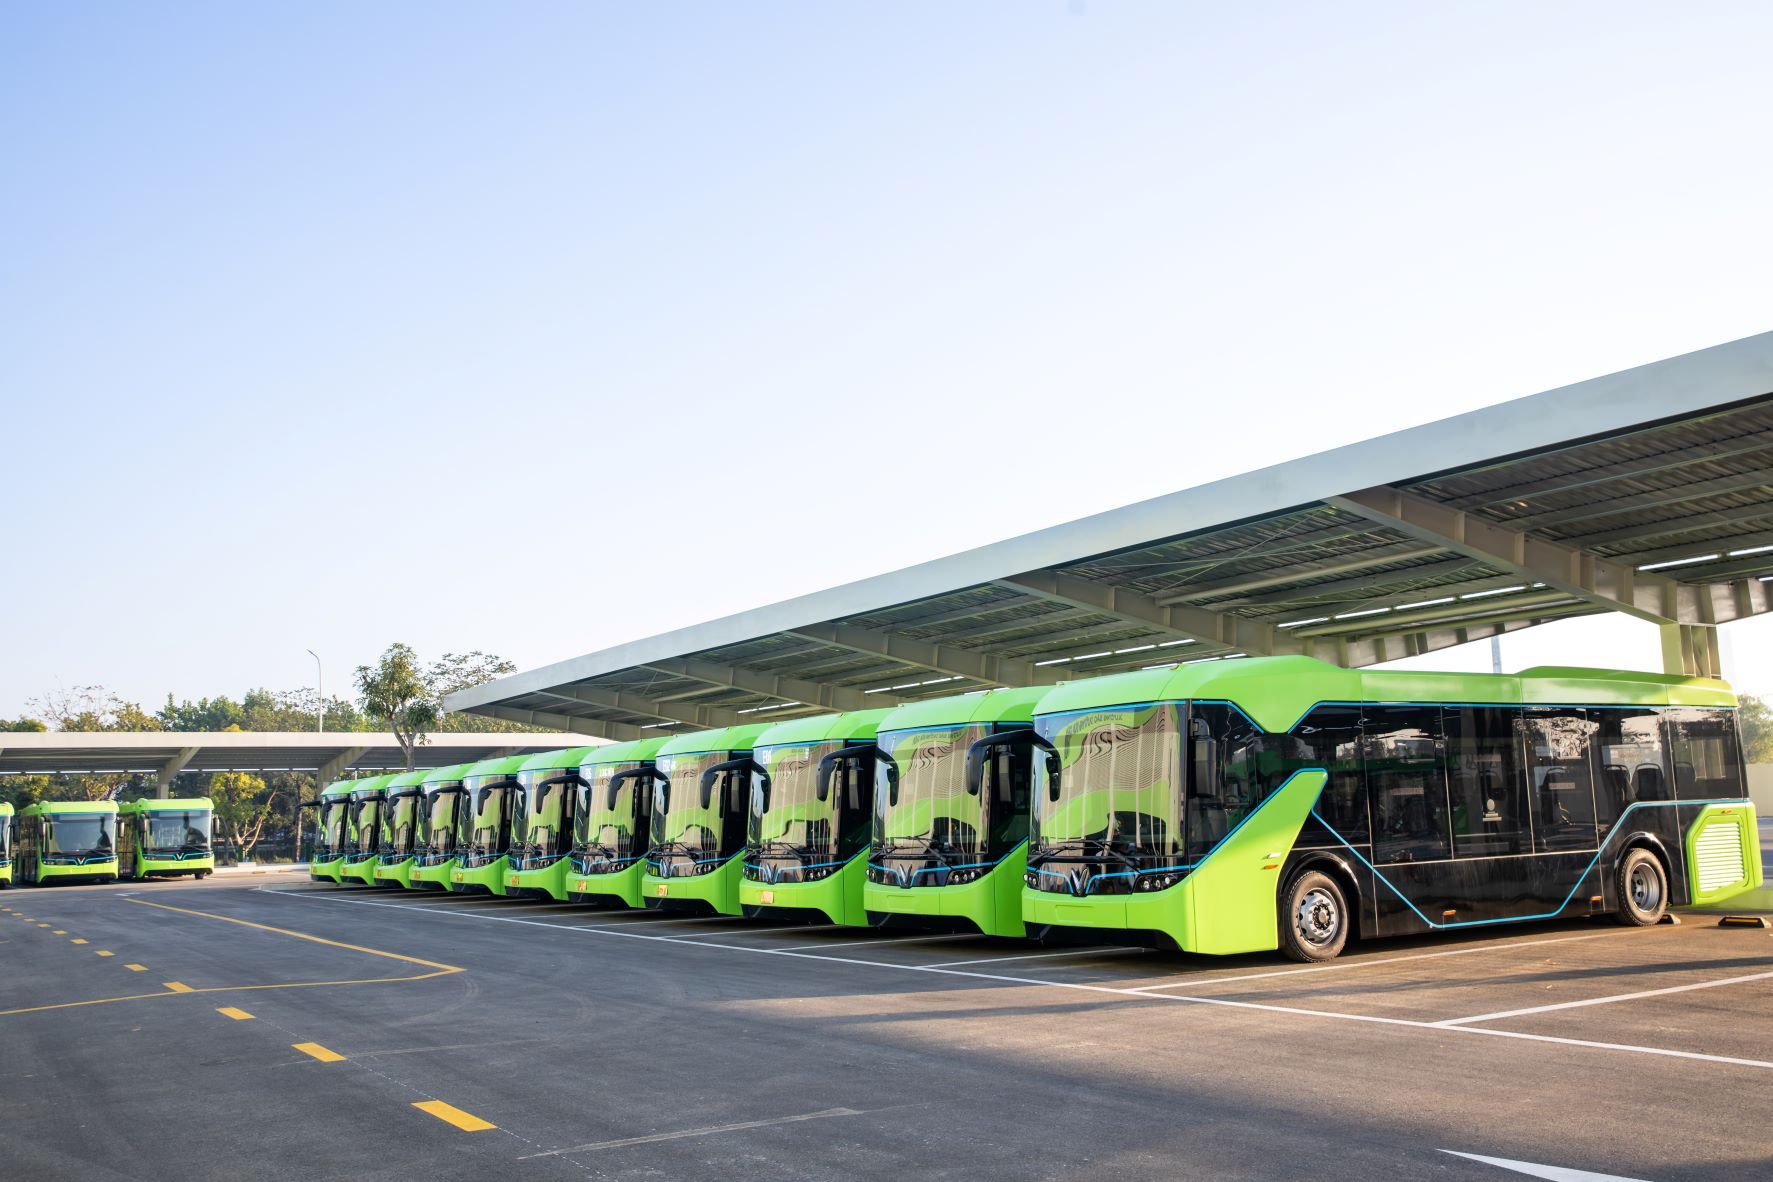 100% xe buýt thay thế, đầu tư mới sử dụng điện, năng lượng xanh từ 2025